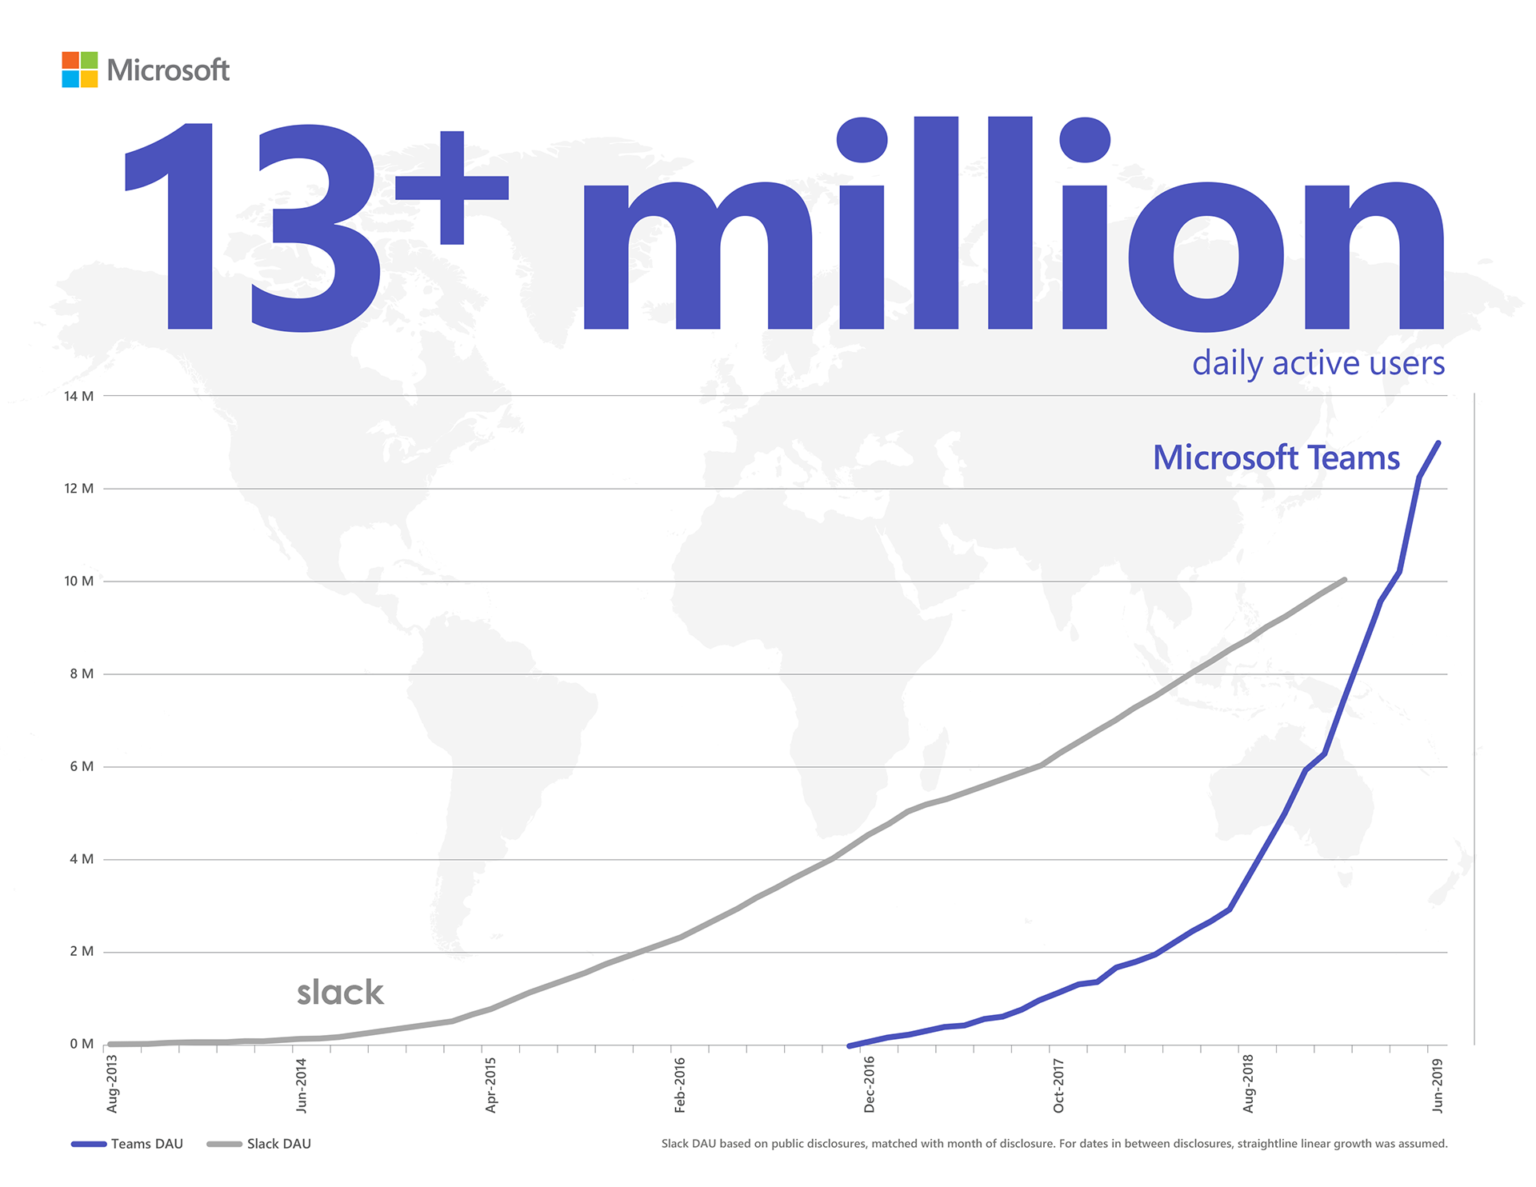 Informačná grafika znázorňujúca službu Microsoft Teams, ktorá s počtom viac ako 13 miliónov aktívnych používateľov denne prekonáva službu Slack. Počet denných aktívnych používateľov služby Slack je založený na verejne dostupných informáciách, ktoré boli zverejňované každý mesiac. Pre časové obdobia medzi zverejňovanými informáciami sa predpokladal lineárny rast.